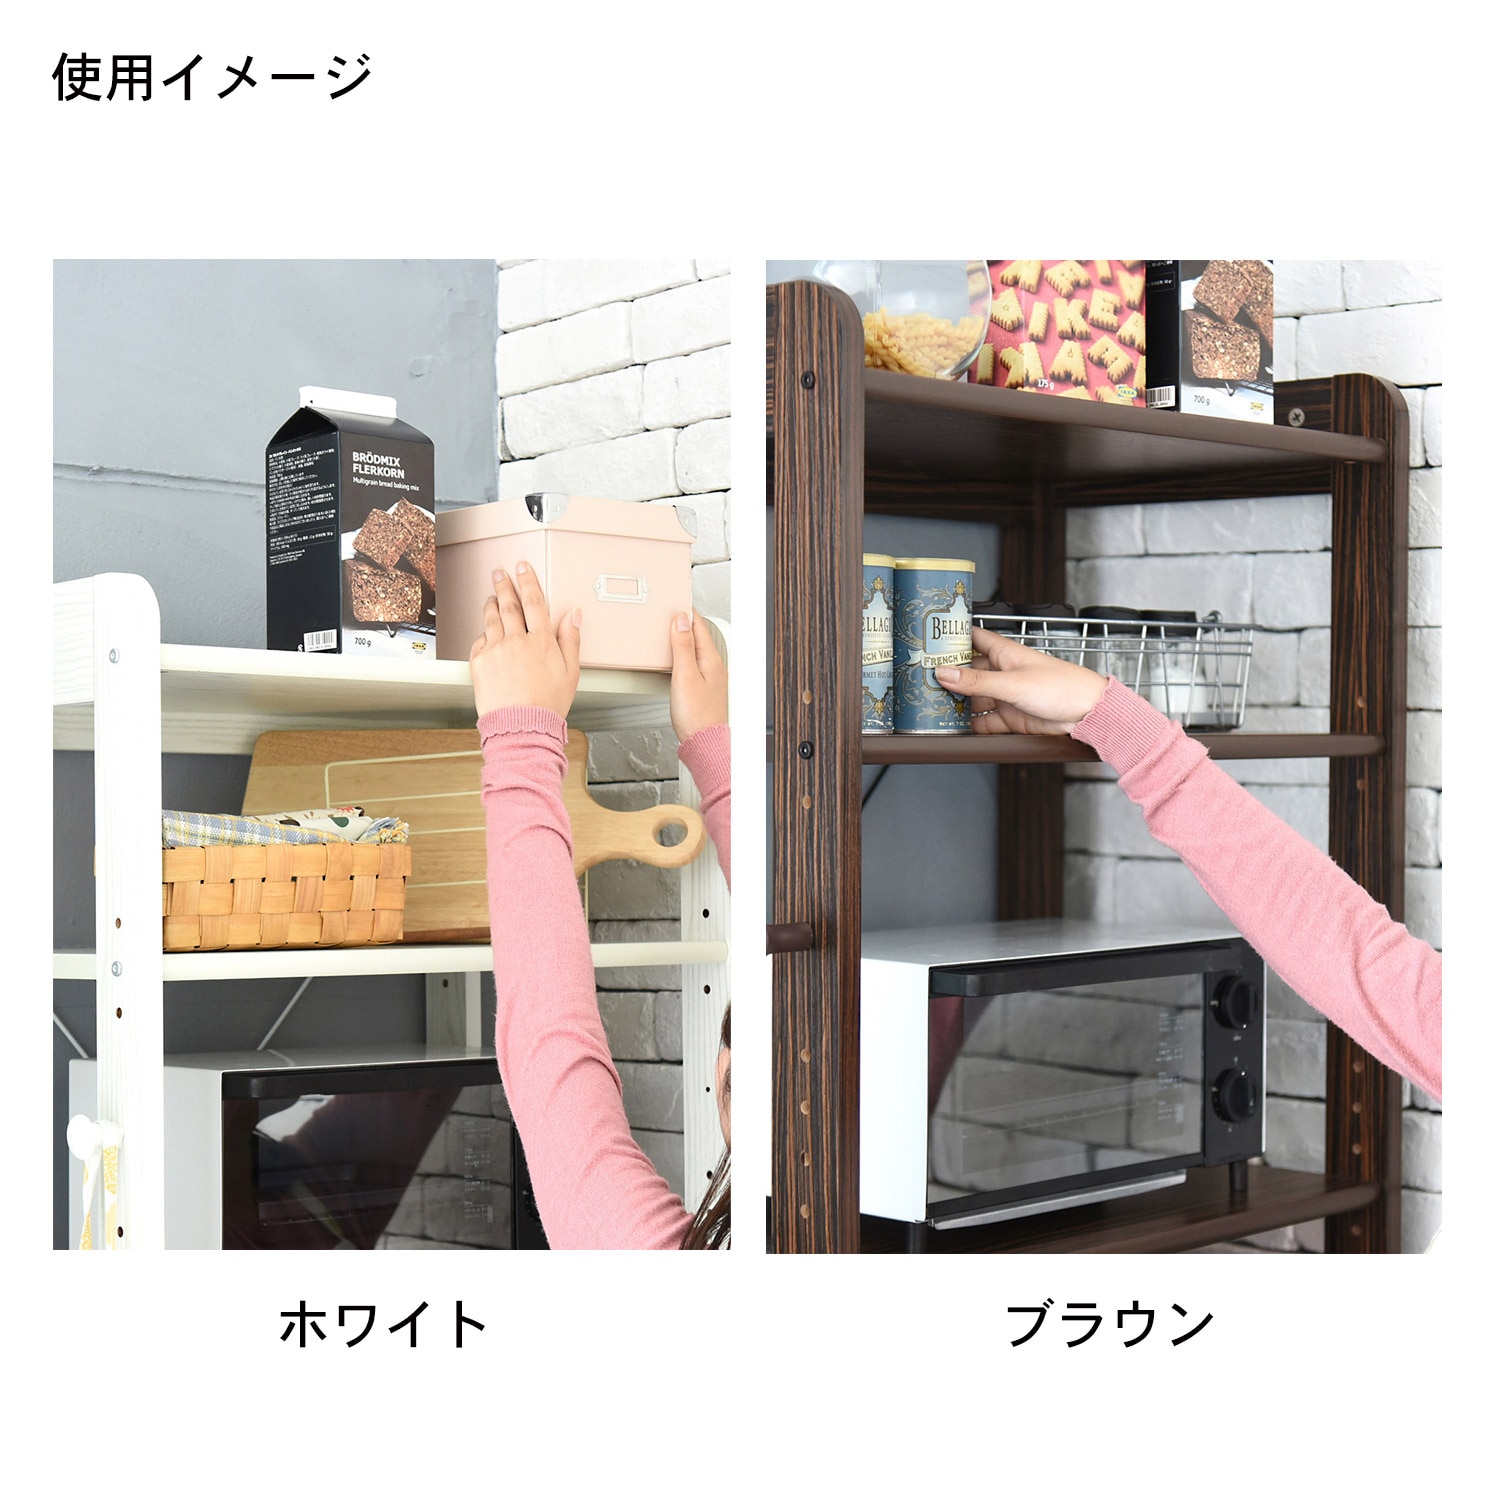 コンパクトな冷蔵庫上におけるキッチンラック